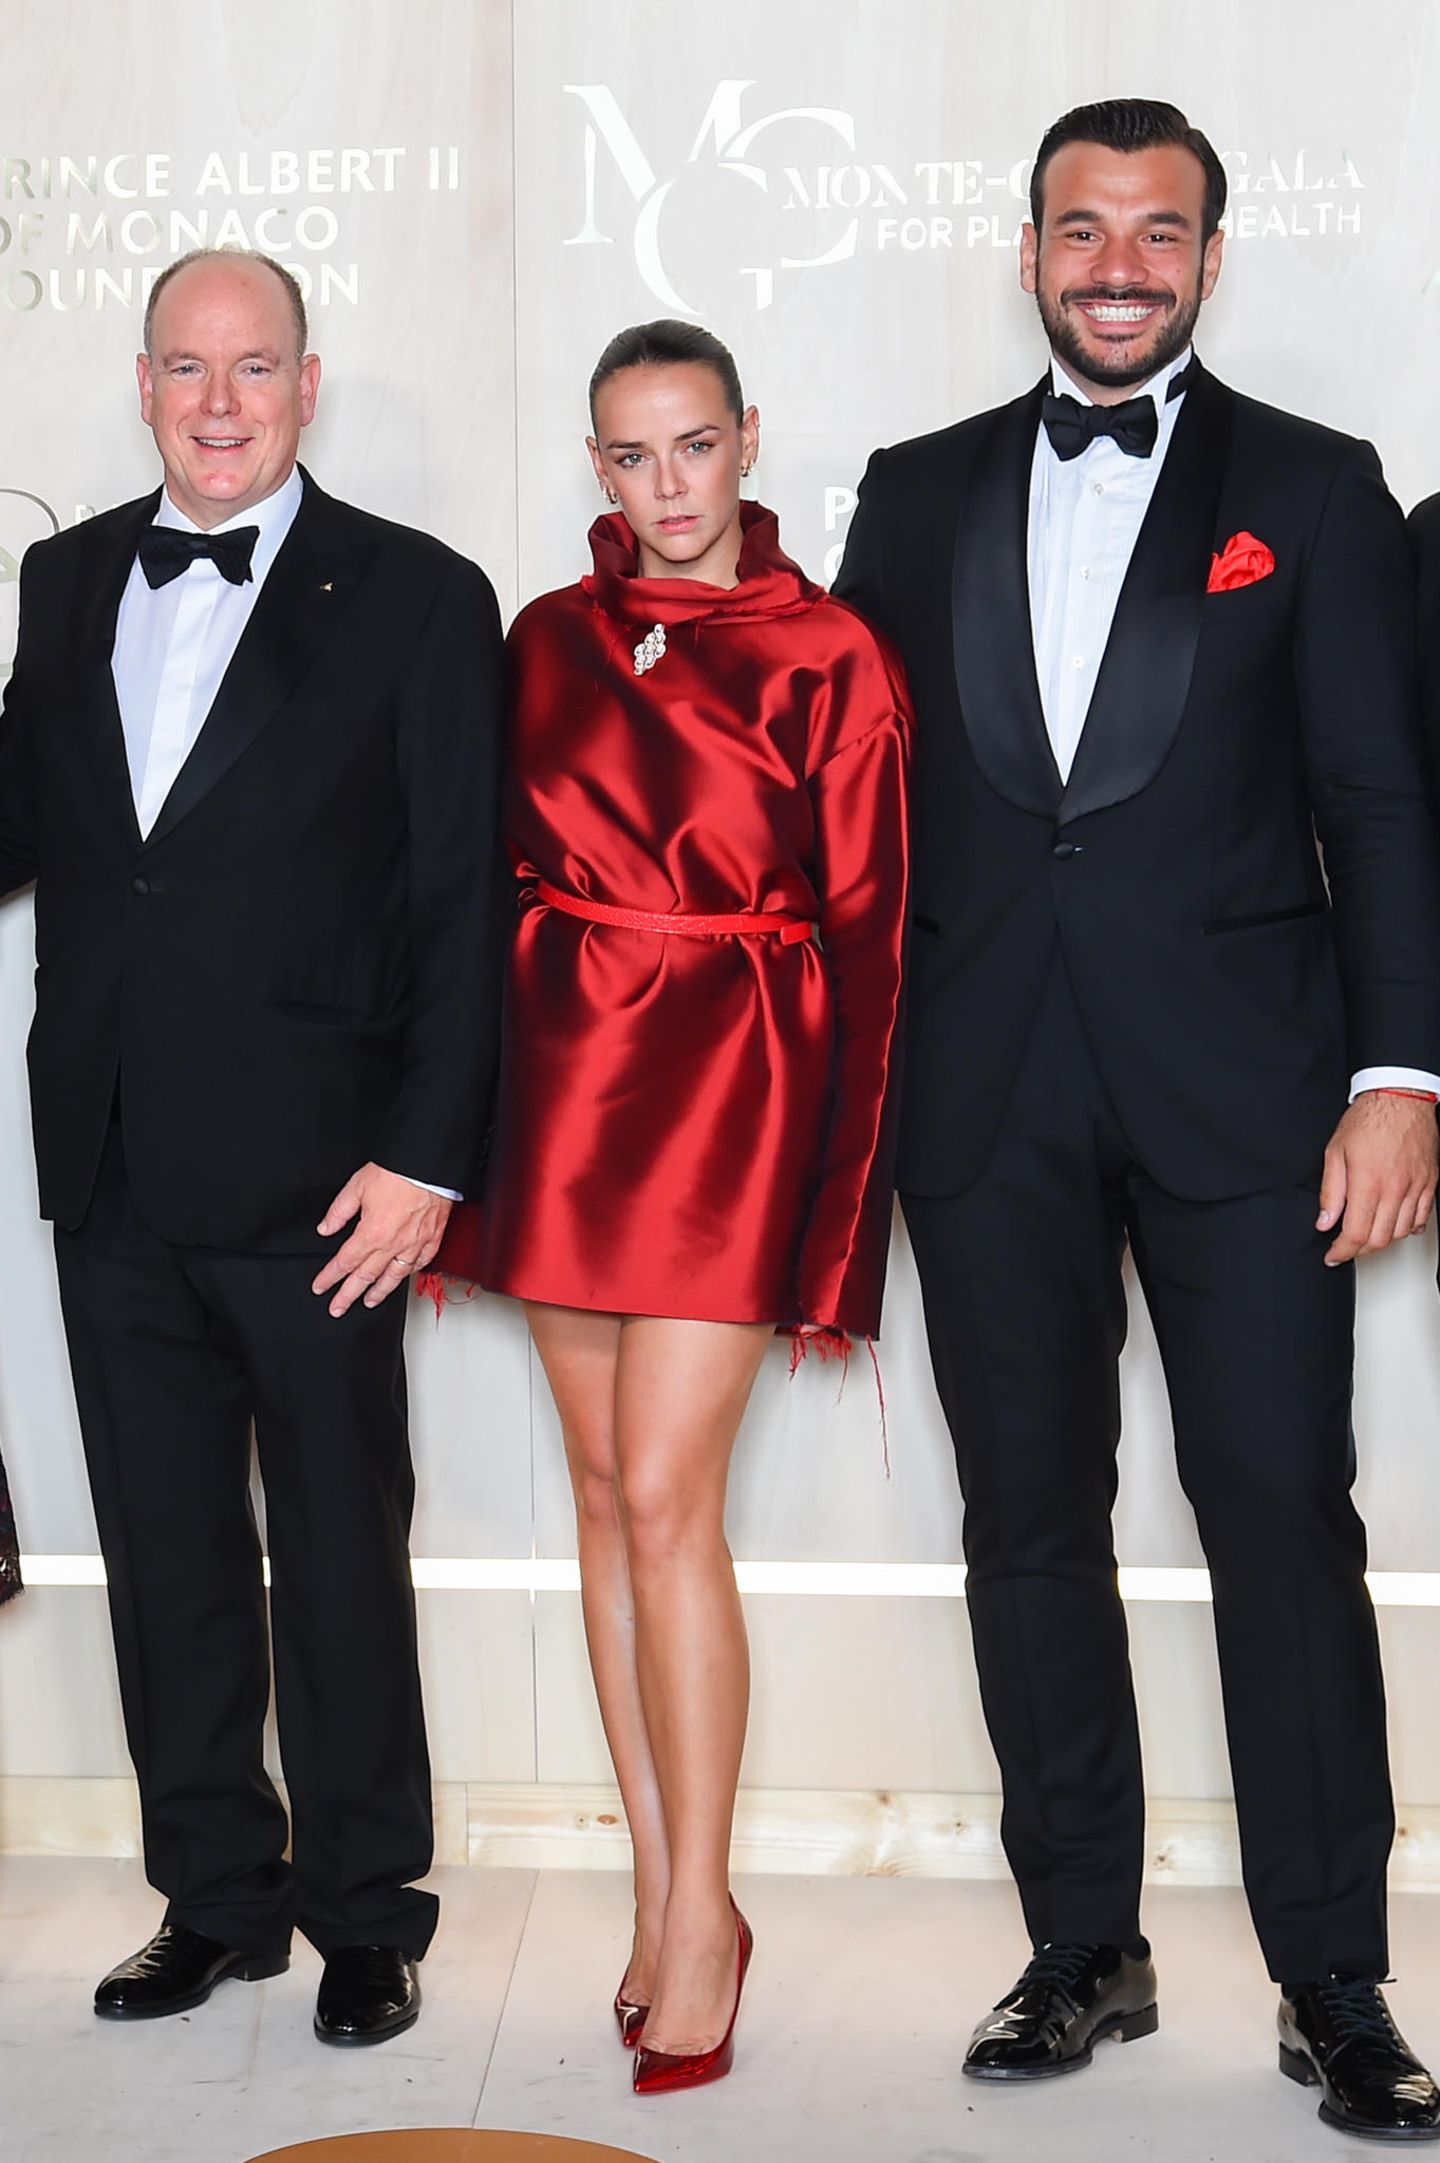 Pauline Ducret glänzt in wahrsten Sinne des Wortes bei der fünften "Monte-Carlo Gala For Planetary Health". In ihrem schimmernden Kleid in kräftigem Rot zieht die Nichte von Fürst Albert (l.) alle Blicke auf sich. Das Beste: Das außergewöhnliche Dress hat die 27-Jährige für ihr Label "Alter" selbst entworfen.